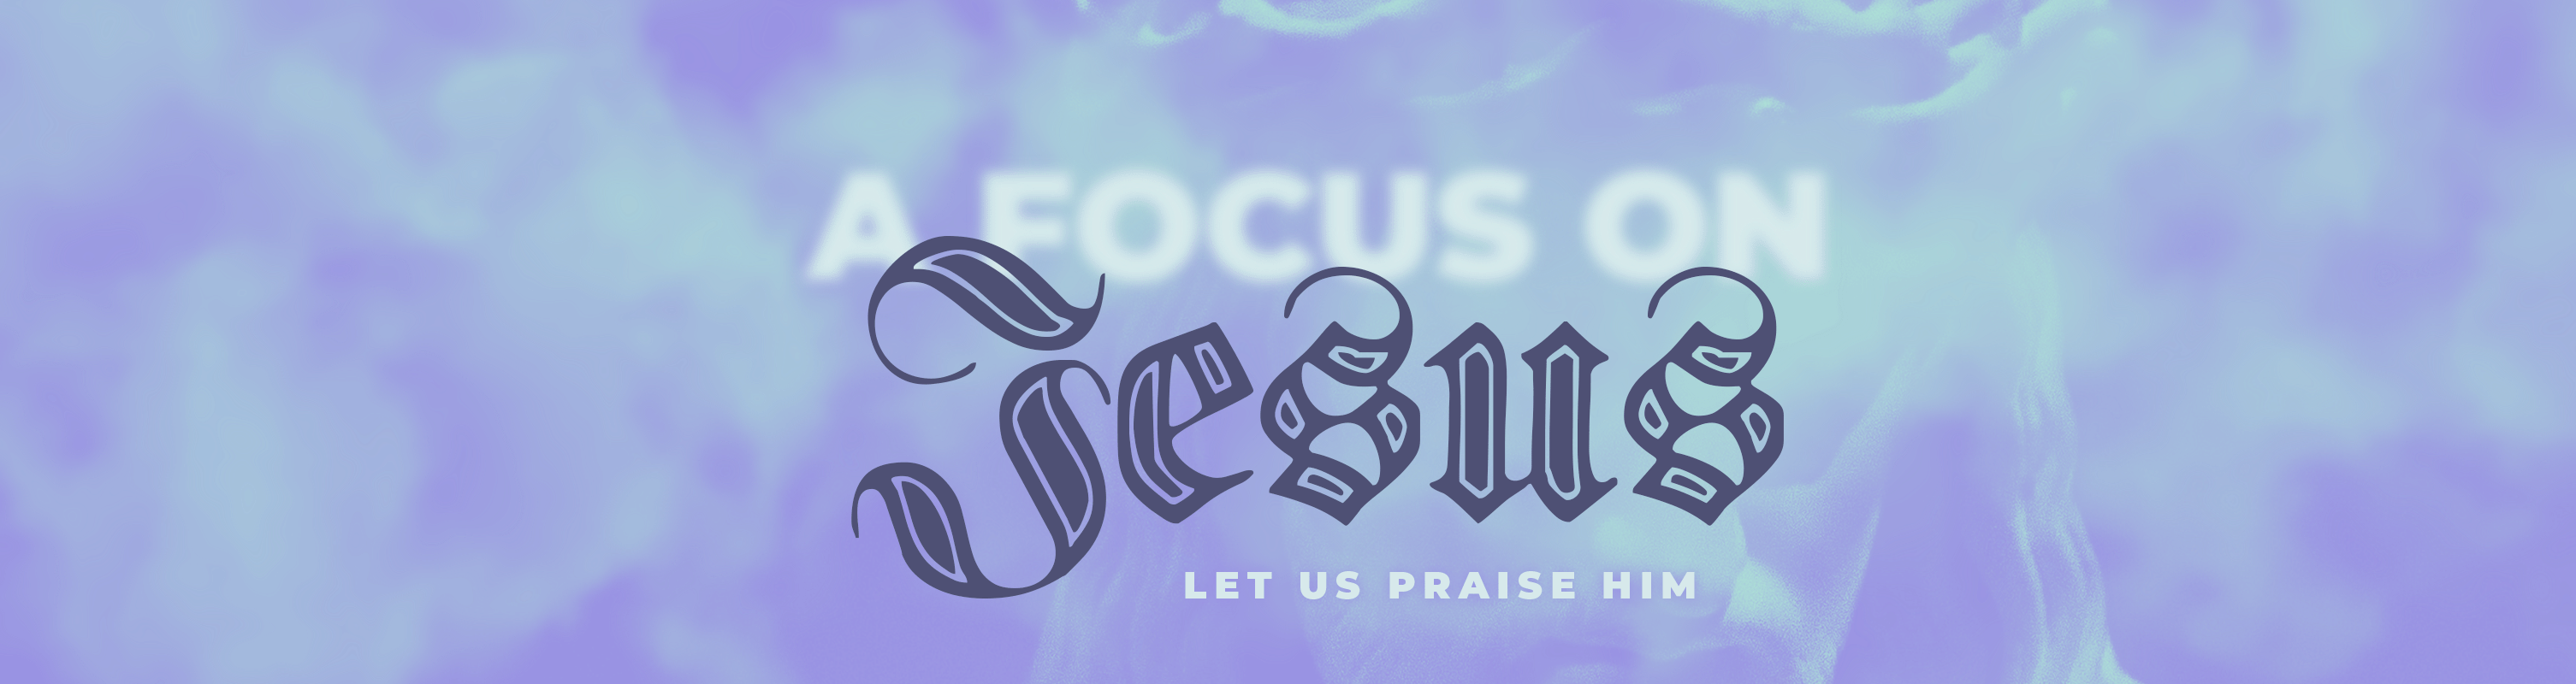 A-Focus-on-Jesus-website-1